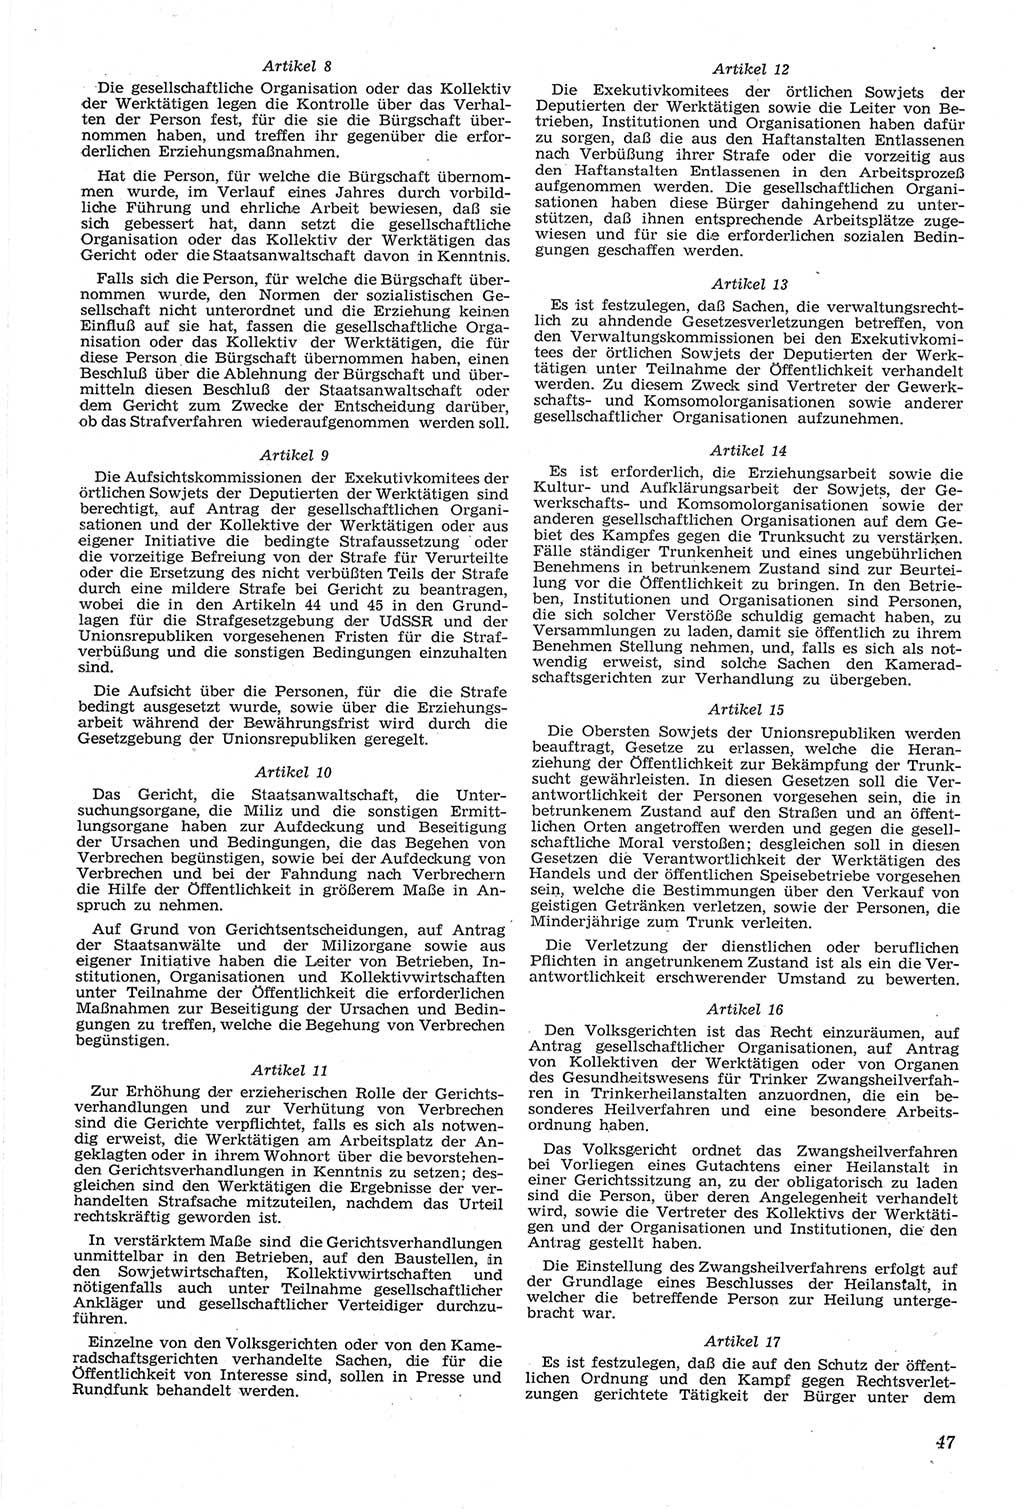 Neue Justiz (NJ), Zeitschrift für Recht und Rechtswissenschaft [Deutsche Demokratische Republik (DDR)], 14. Jahrgang 1960, Seite 47 (NJ DDR 1960, S. 47)